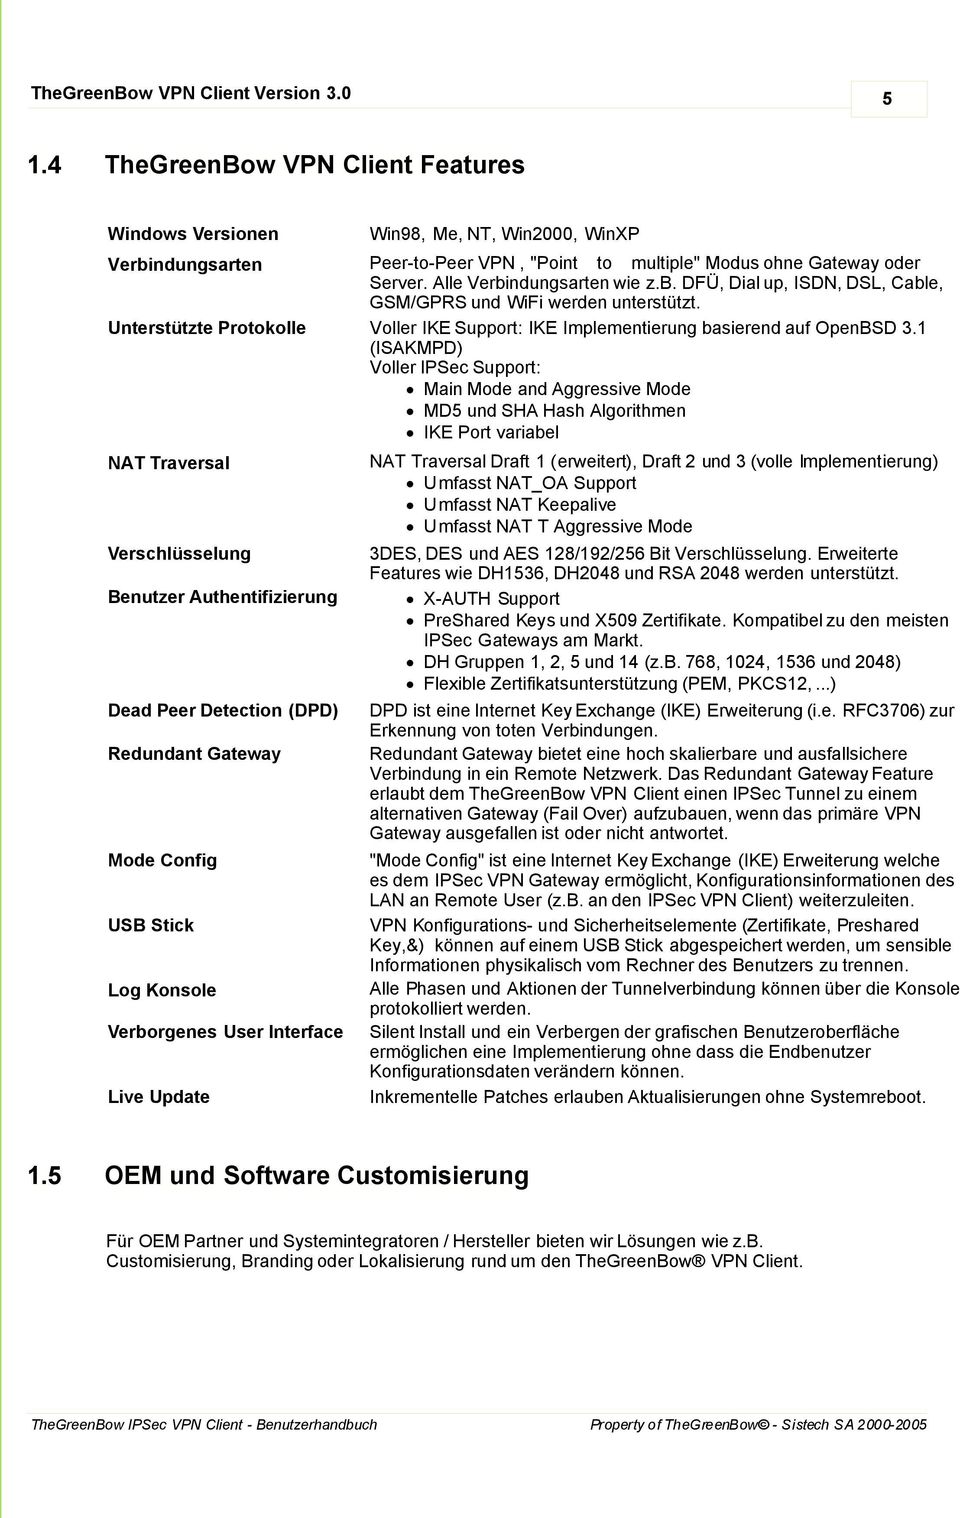 Unterstützte Protokolle Voller IKE Support: IKE Implementierung basierend auf OpenBSD 3.